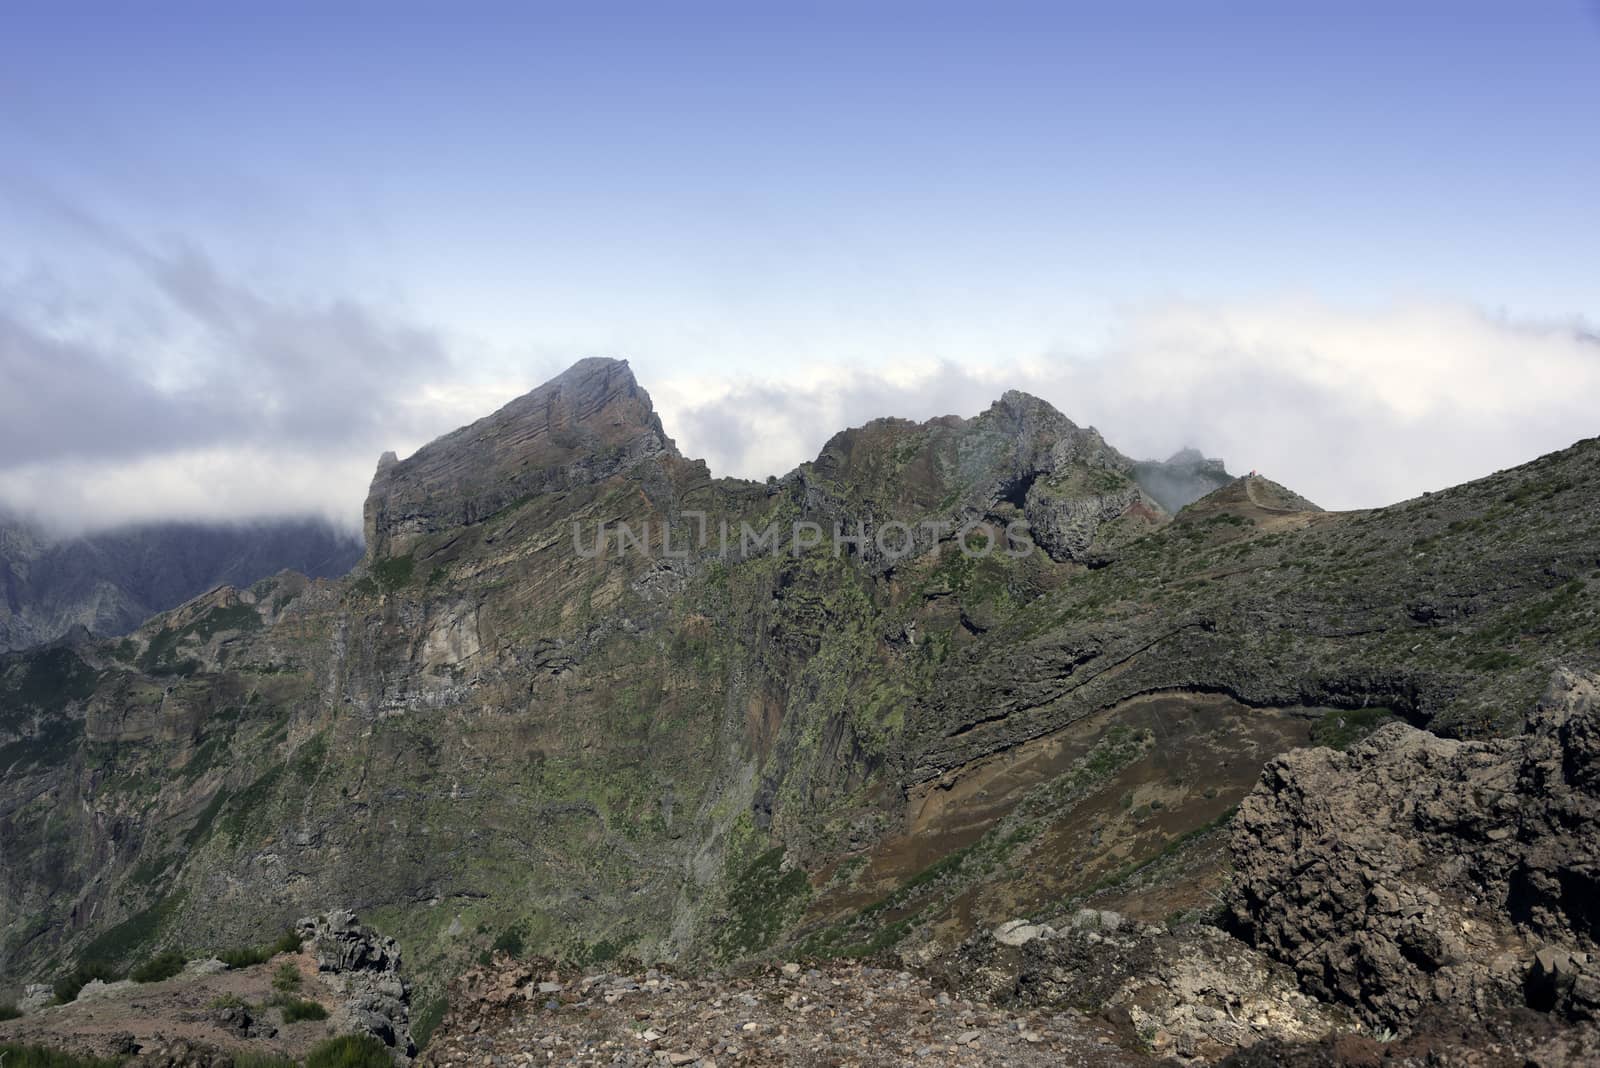 pico arieiro on madeira island by compuinfoto